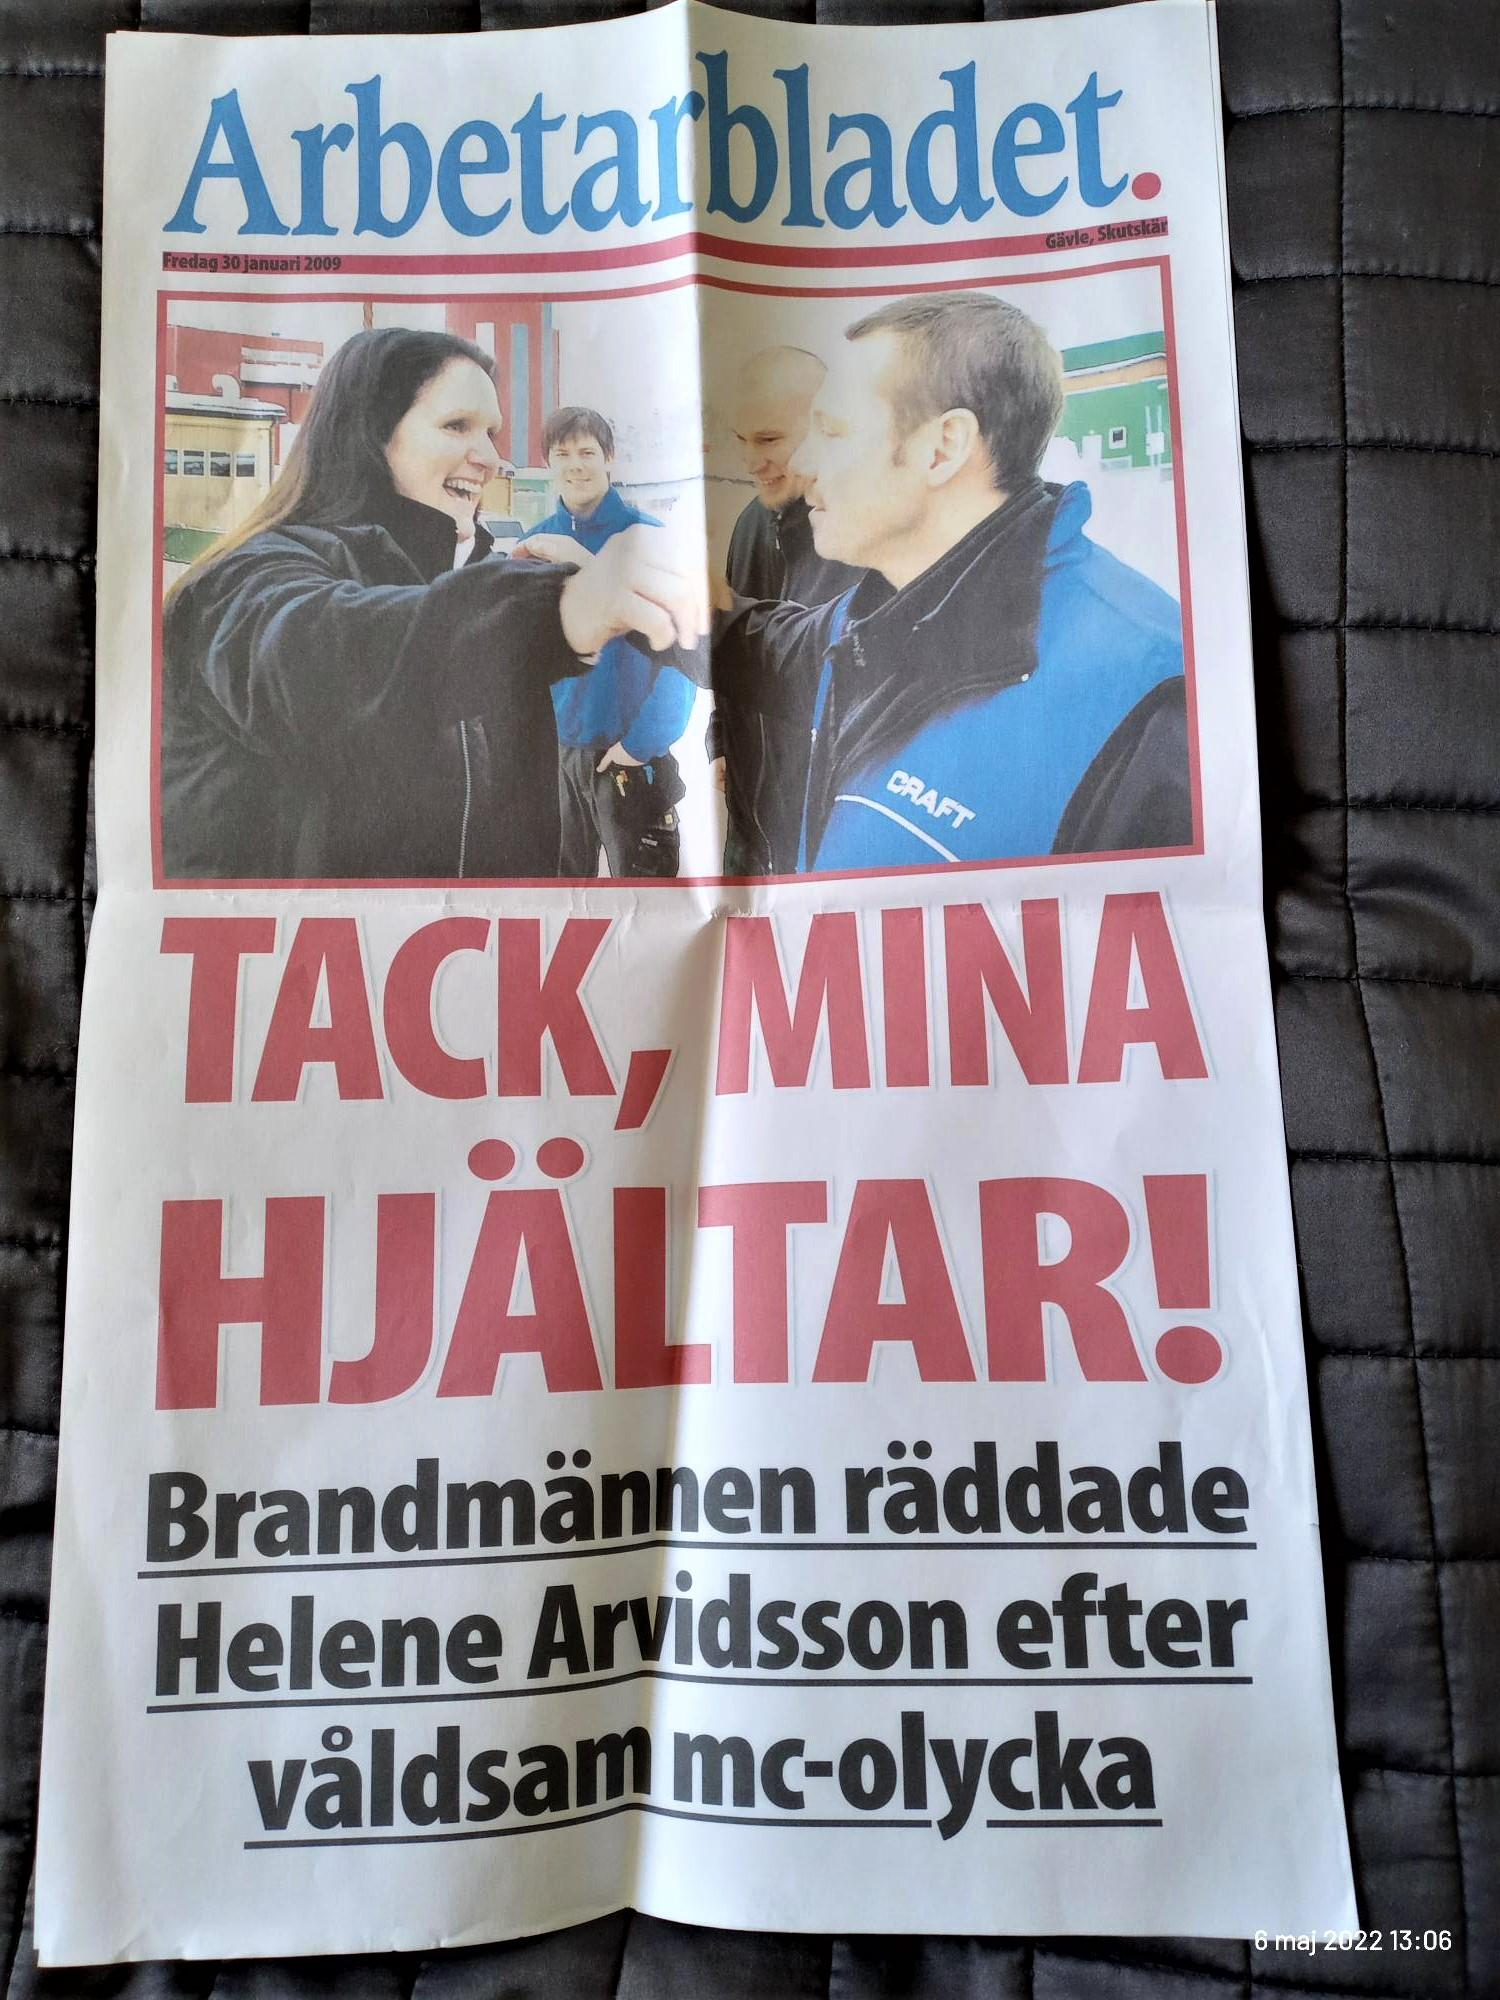 Tidningsartikeln om Helenes MC-olycka. På tidningen står det "Tack, mina hjältar! Brandmännen räddade Helene Arvidsson efter våldsam mc-olycka".